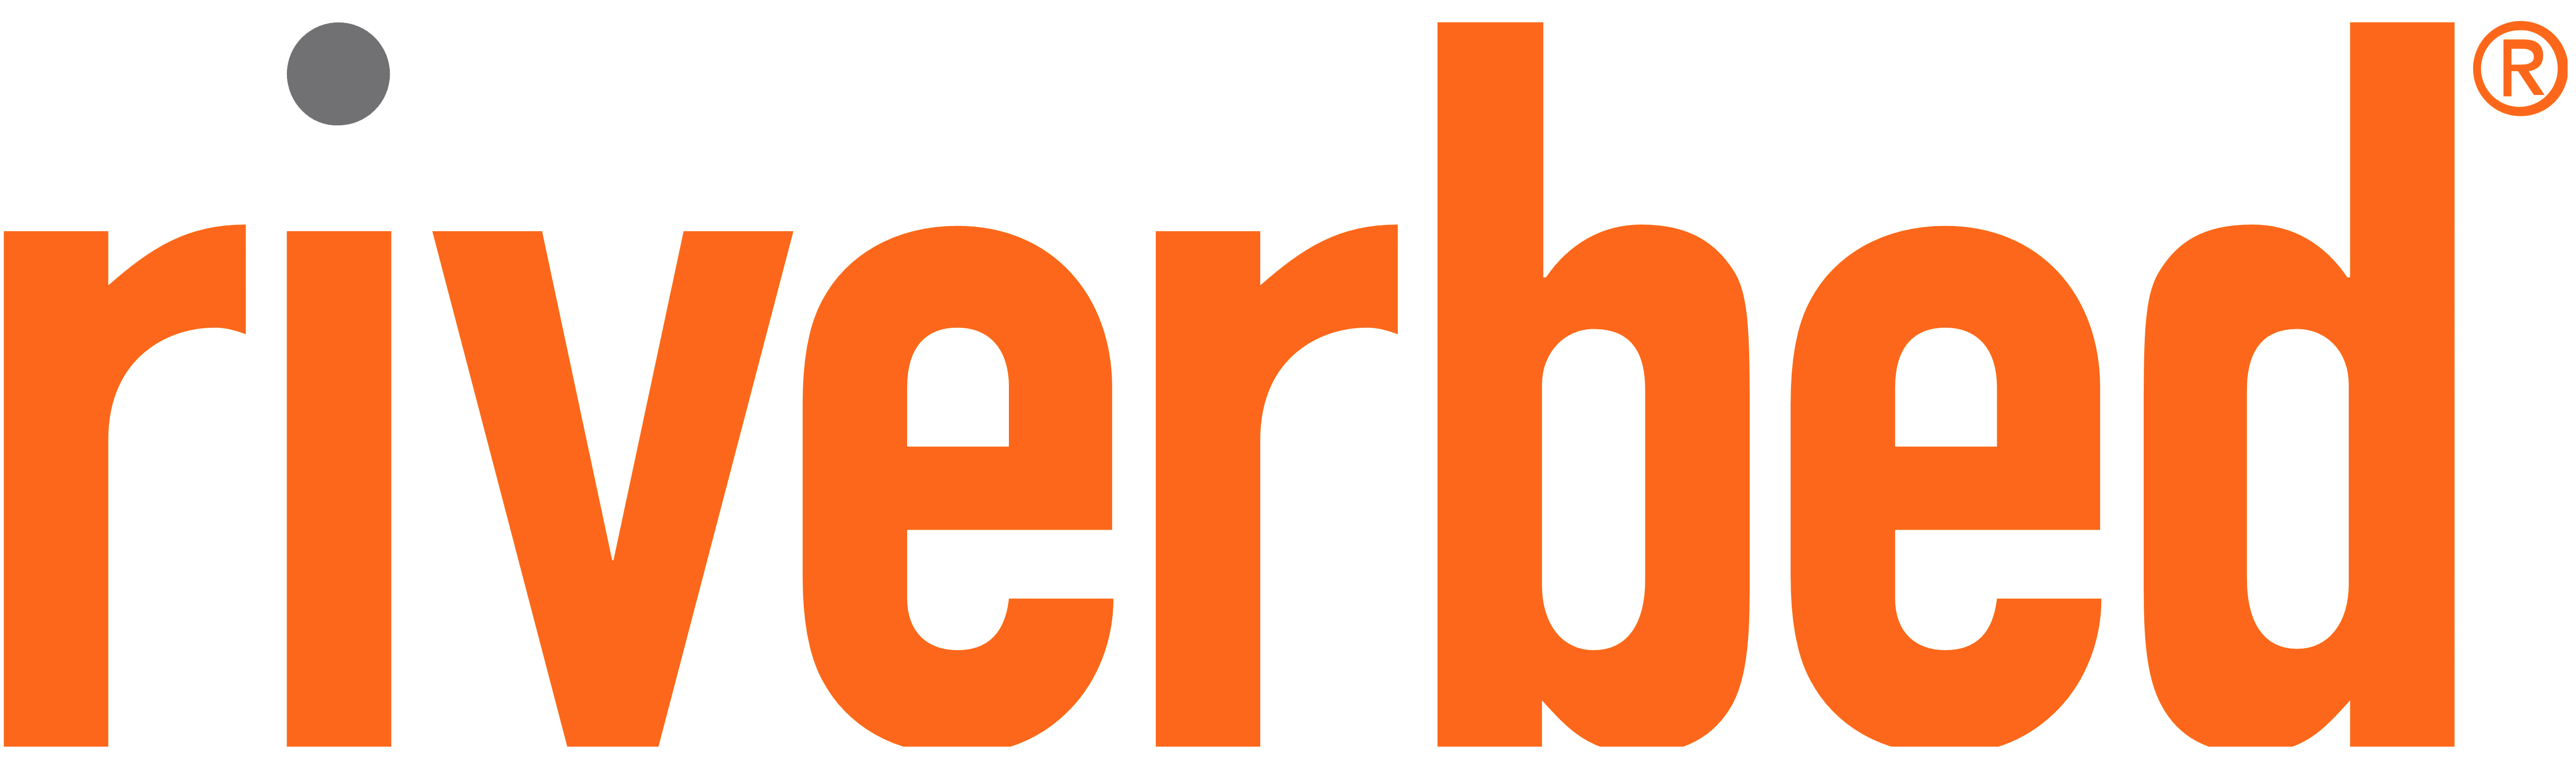 Riverbed logo, logotype